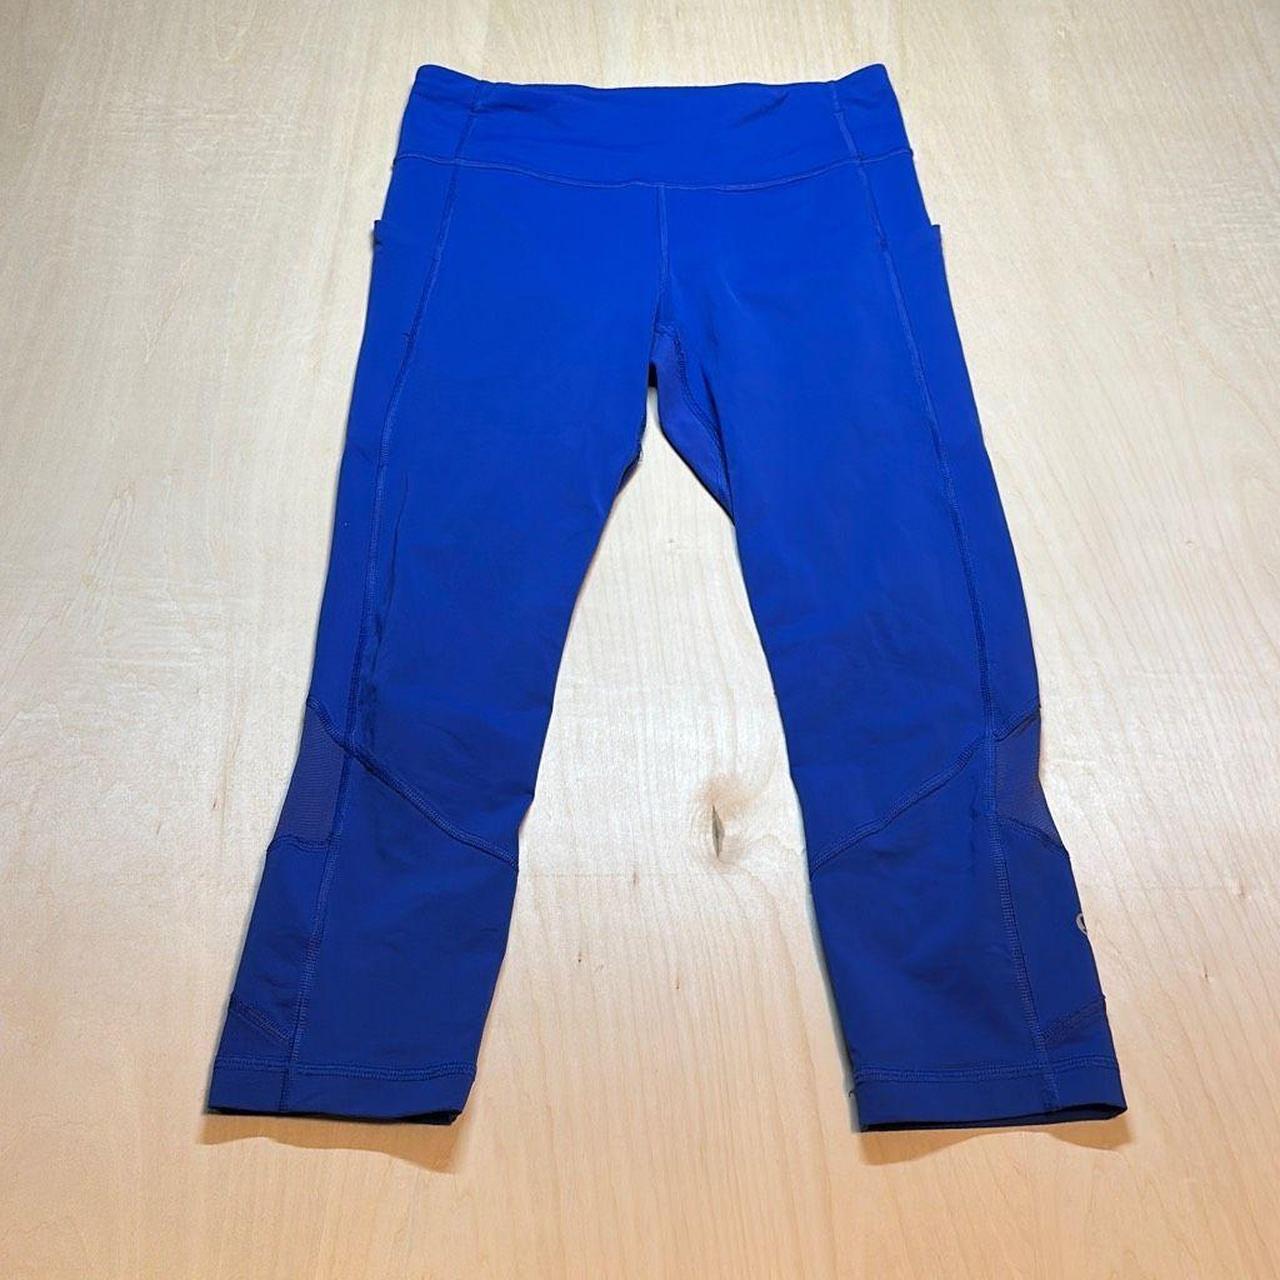 Lululemon leggings cropped capri royal blue zipper